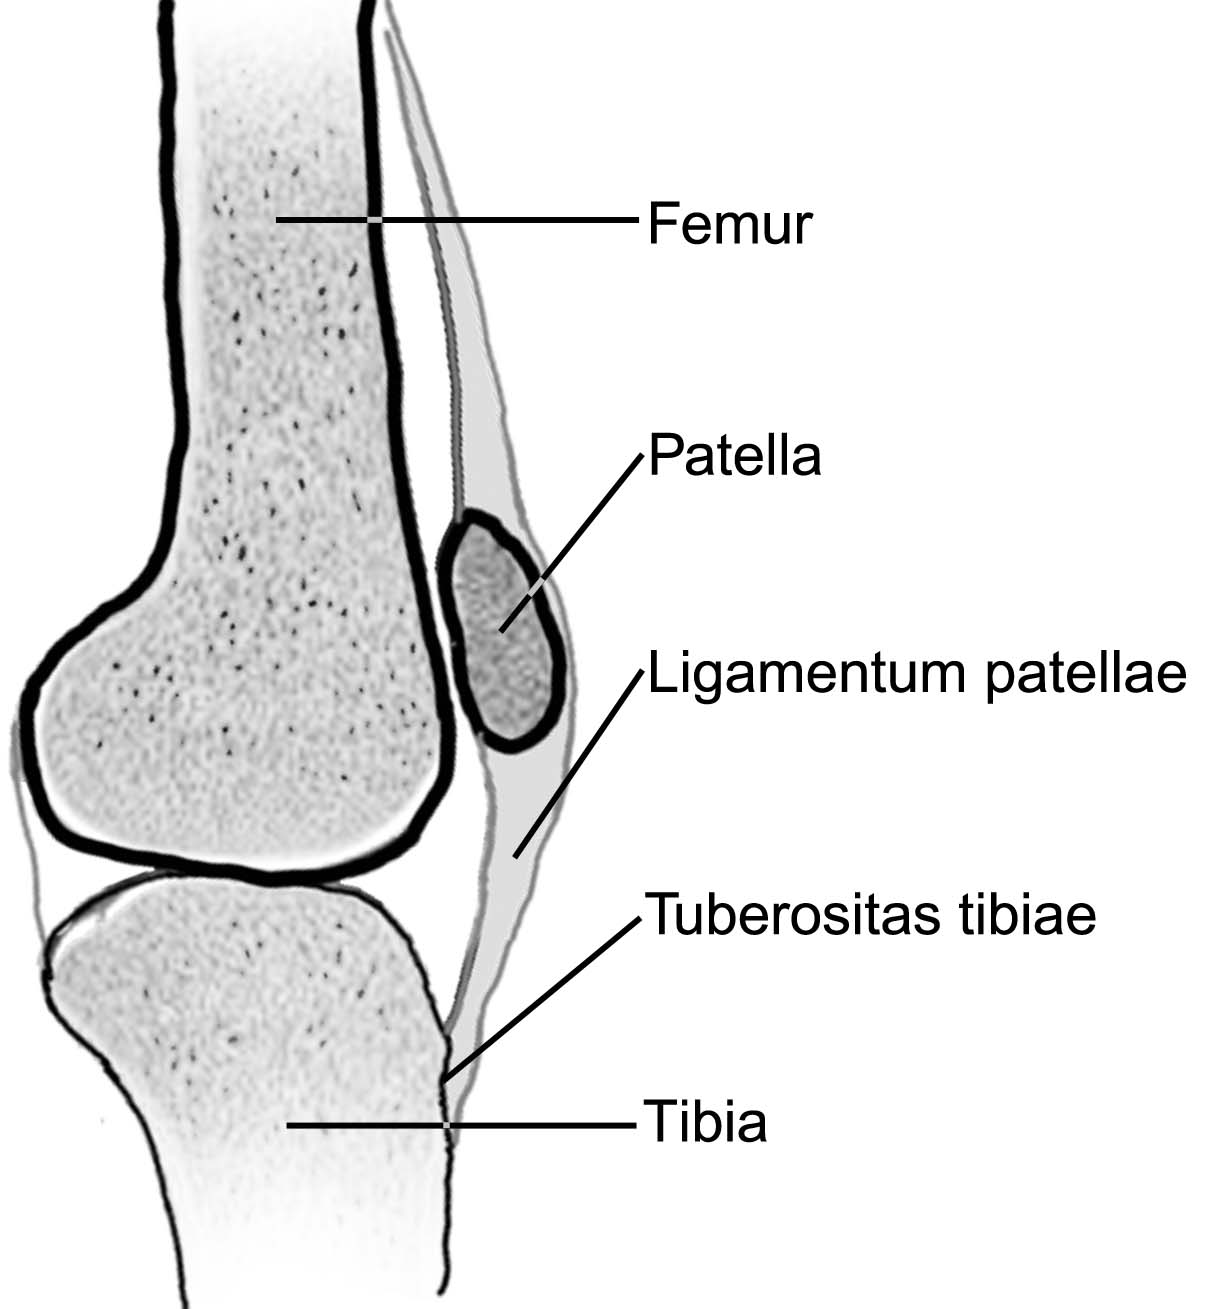 6 Patella (diz kapağı kemiği); iskeletteki en büyük sesamoid (susam şekline benzeyen) kemiktir. Diz kapağı kemiğinin kol iskeletinde bir karşılığı yoktur.